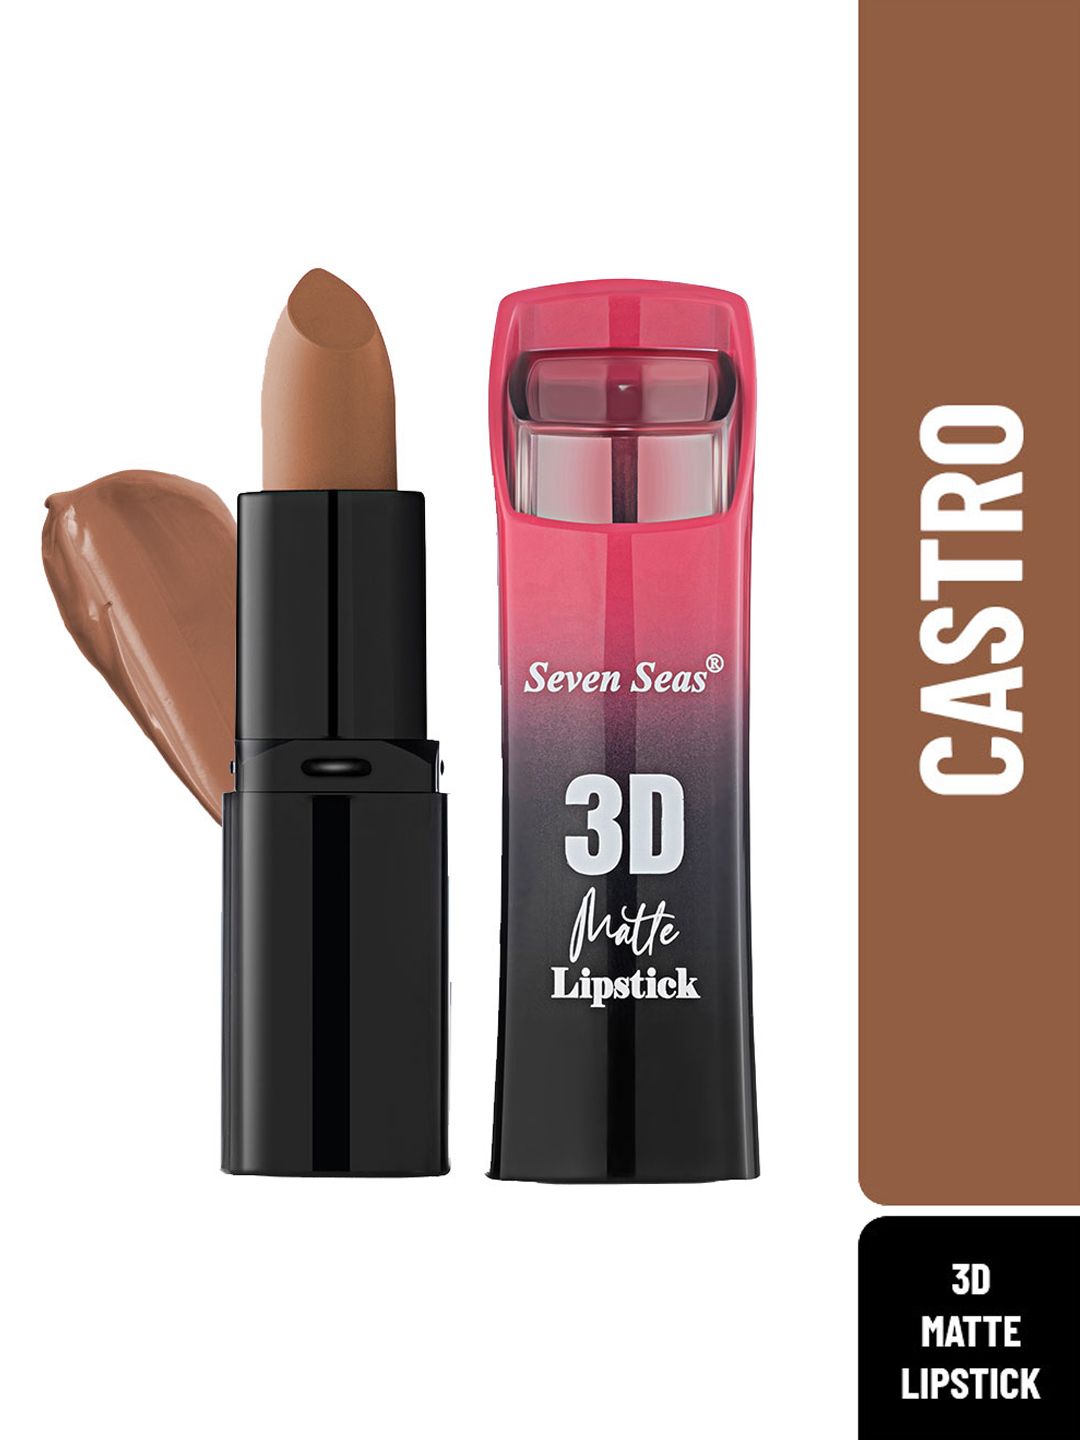 Seven Seas 3D Matte Lipstick Full Coverage - Castro Price in India